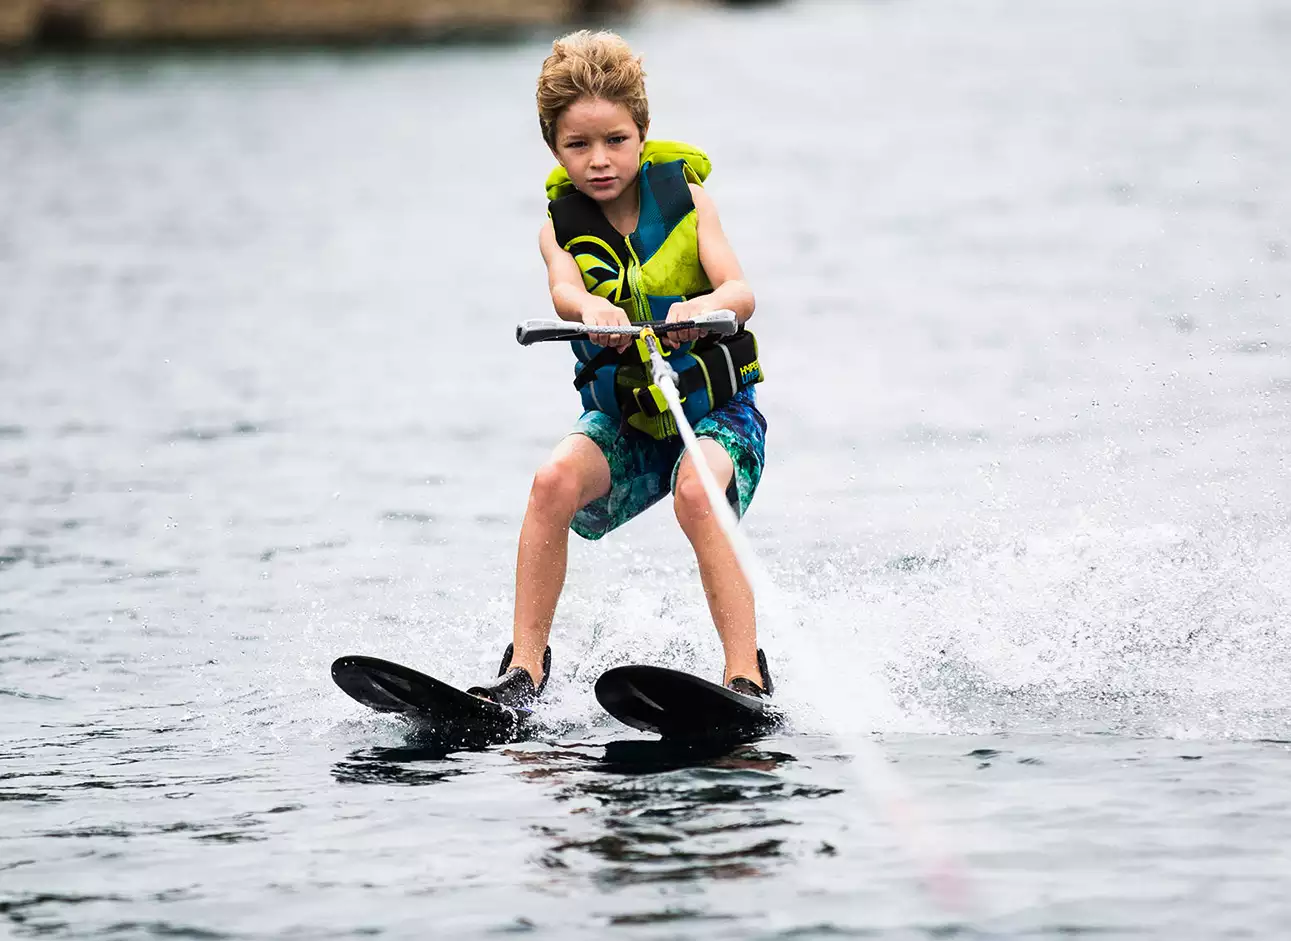 Water Skiing - Enjoy exhilarating rides on water